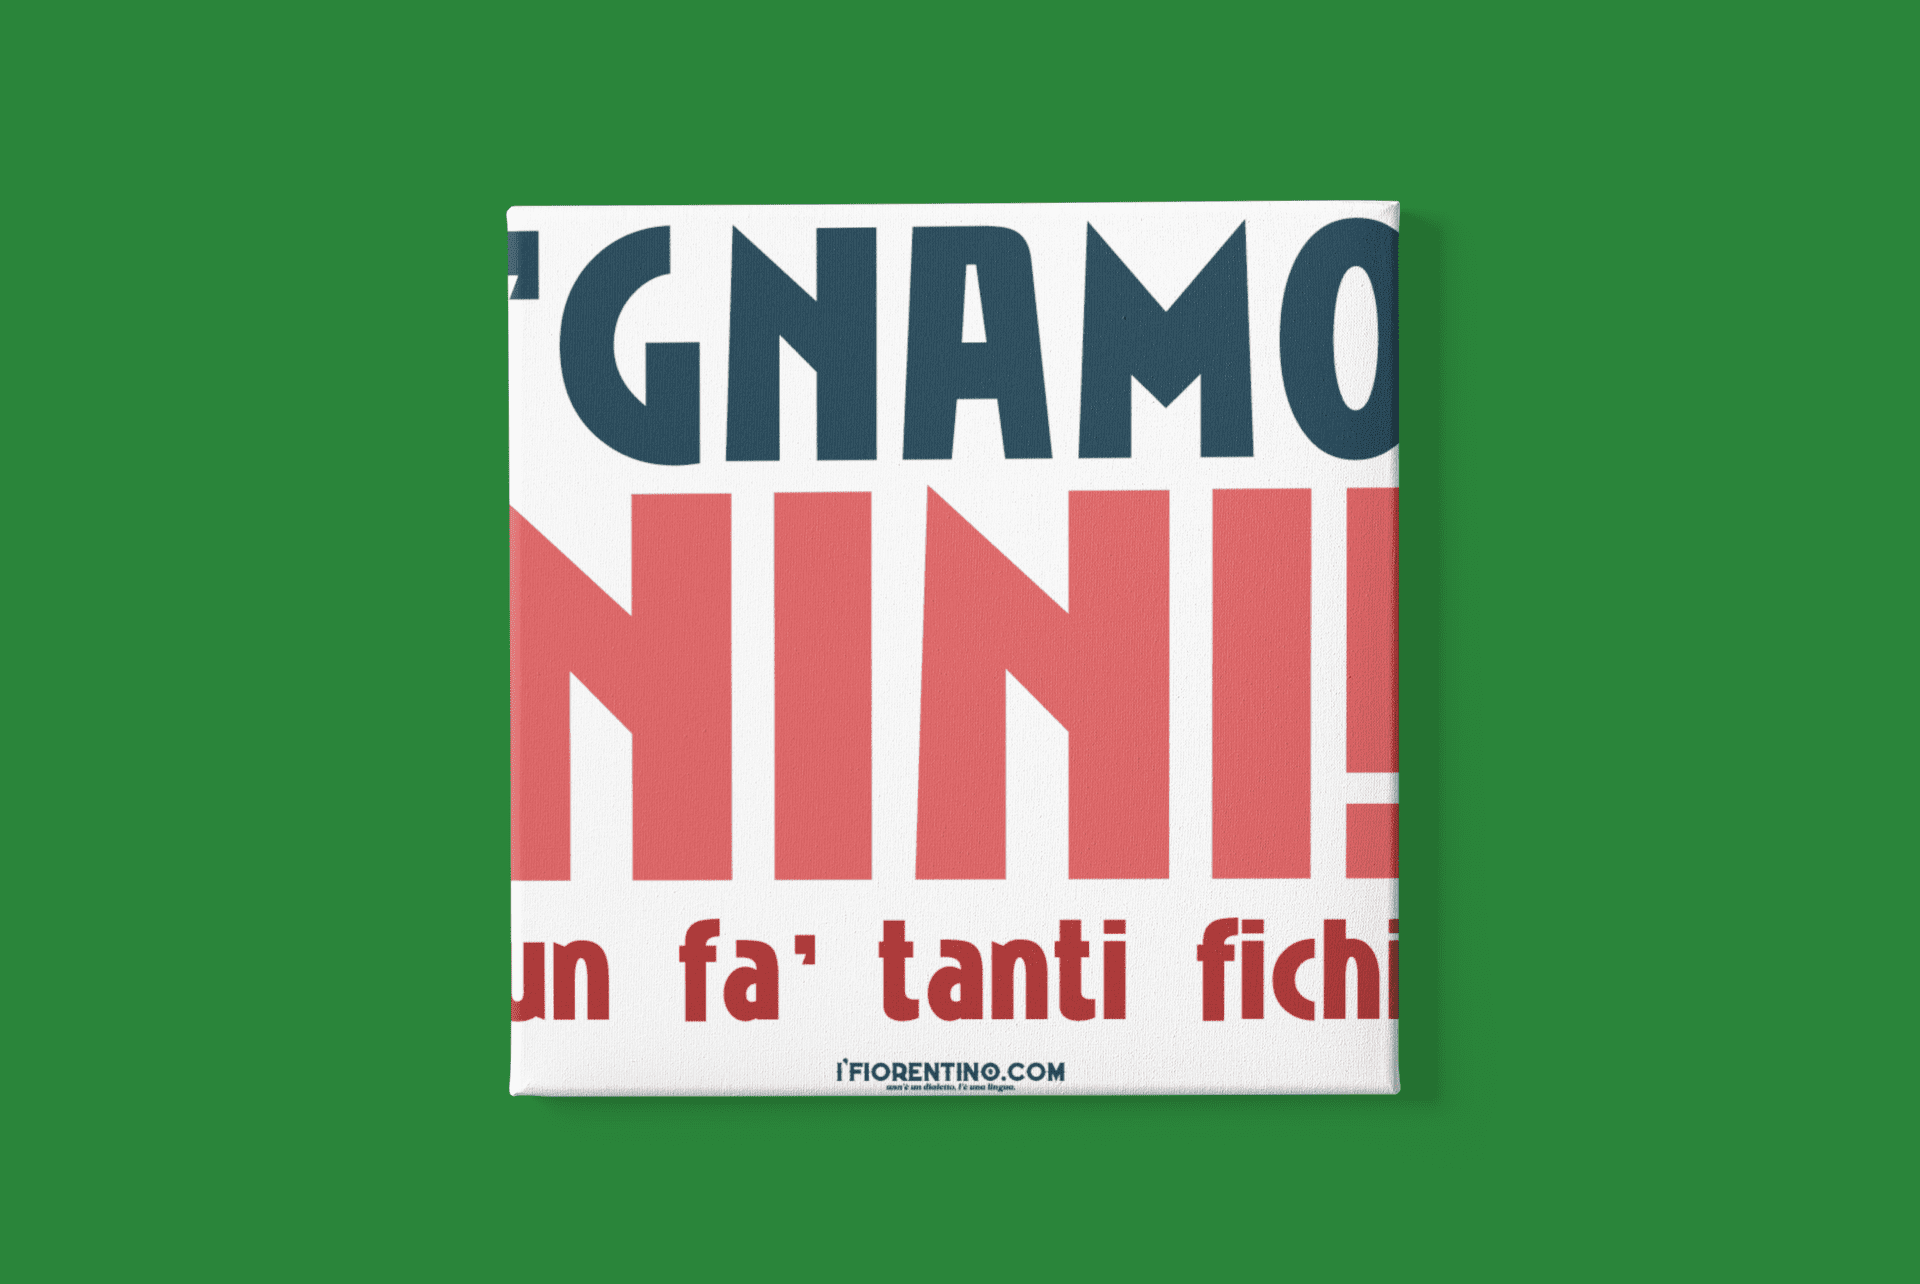 'GNAMO NINI 'un fa tanti fichi - poster fiorentini - poster firenze - regalo fiorentino - fiorentino  - foppeddittelo